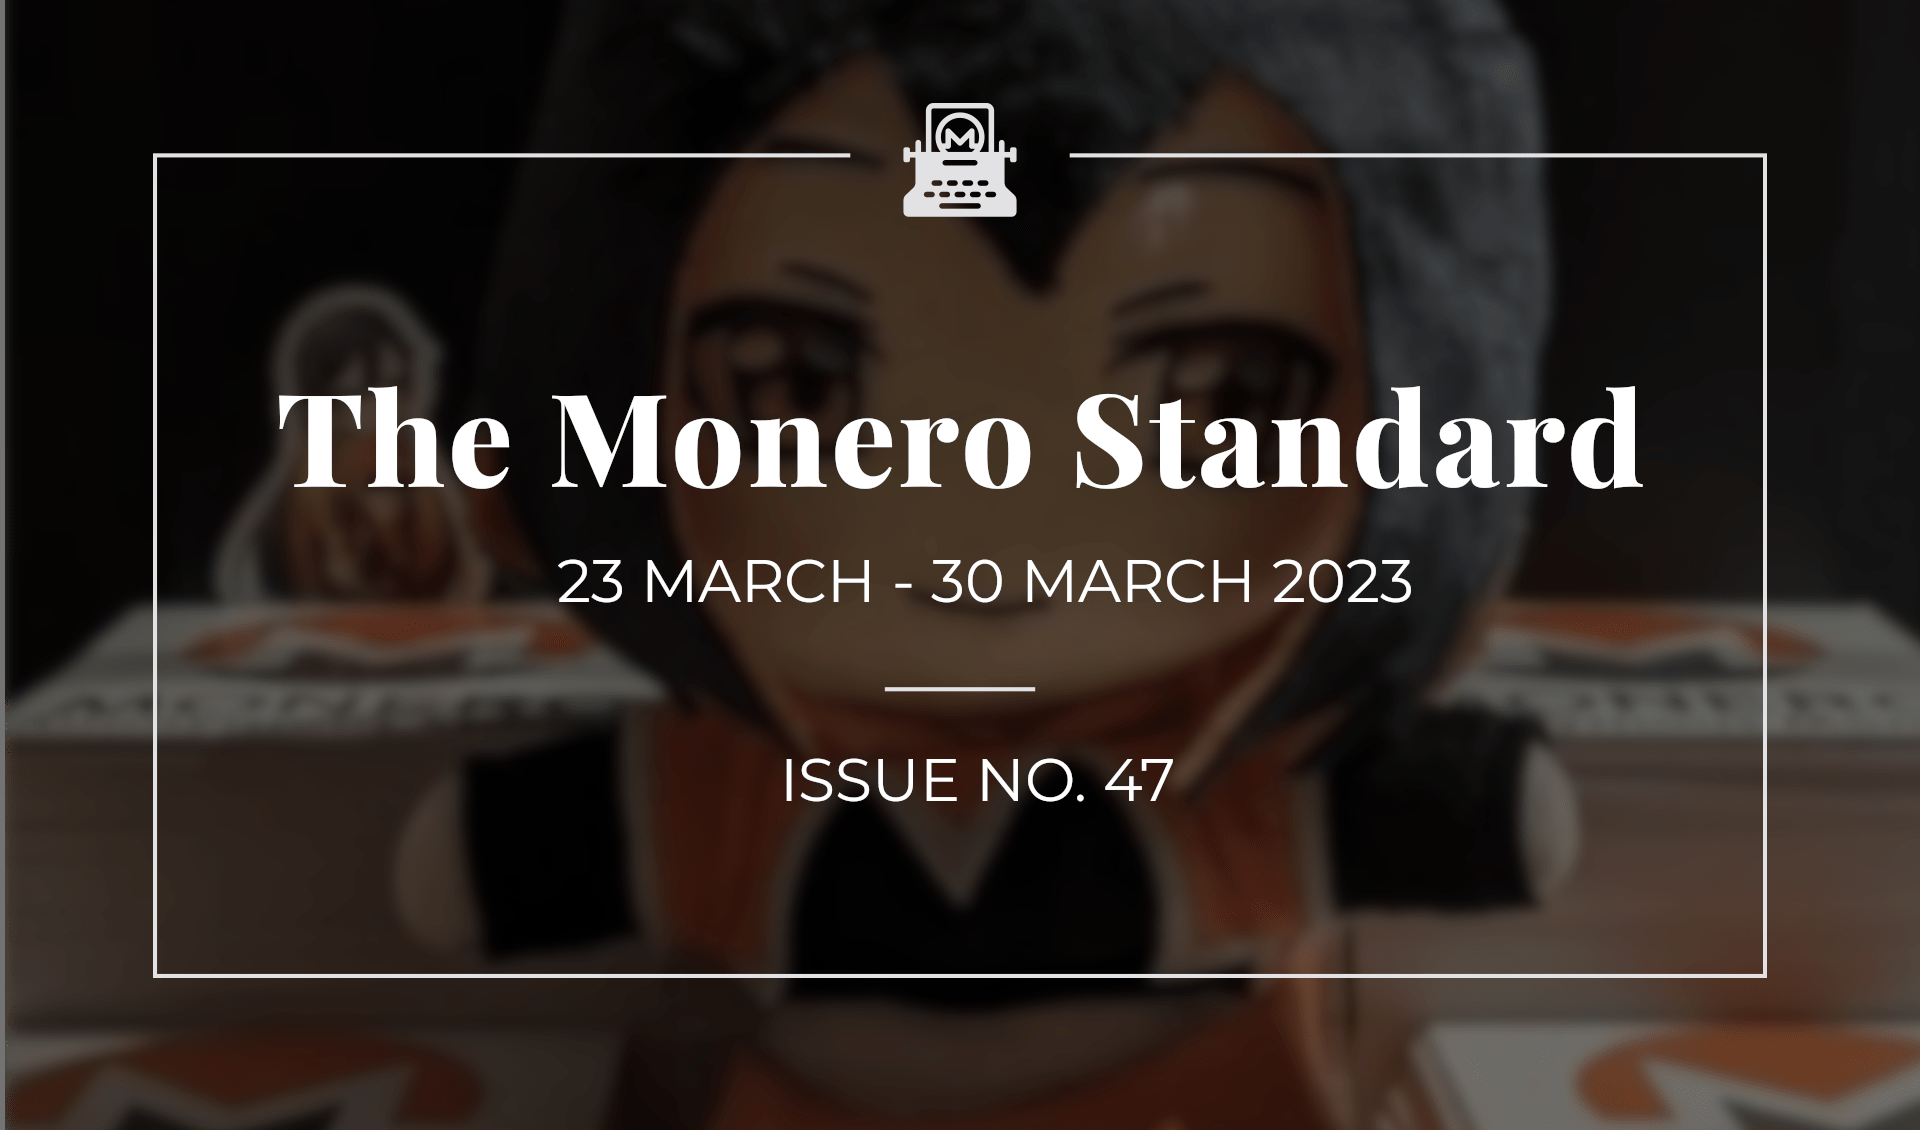 The Monero Standard #47: 23 March 2023 - 30 March 2023